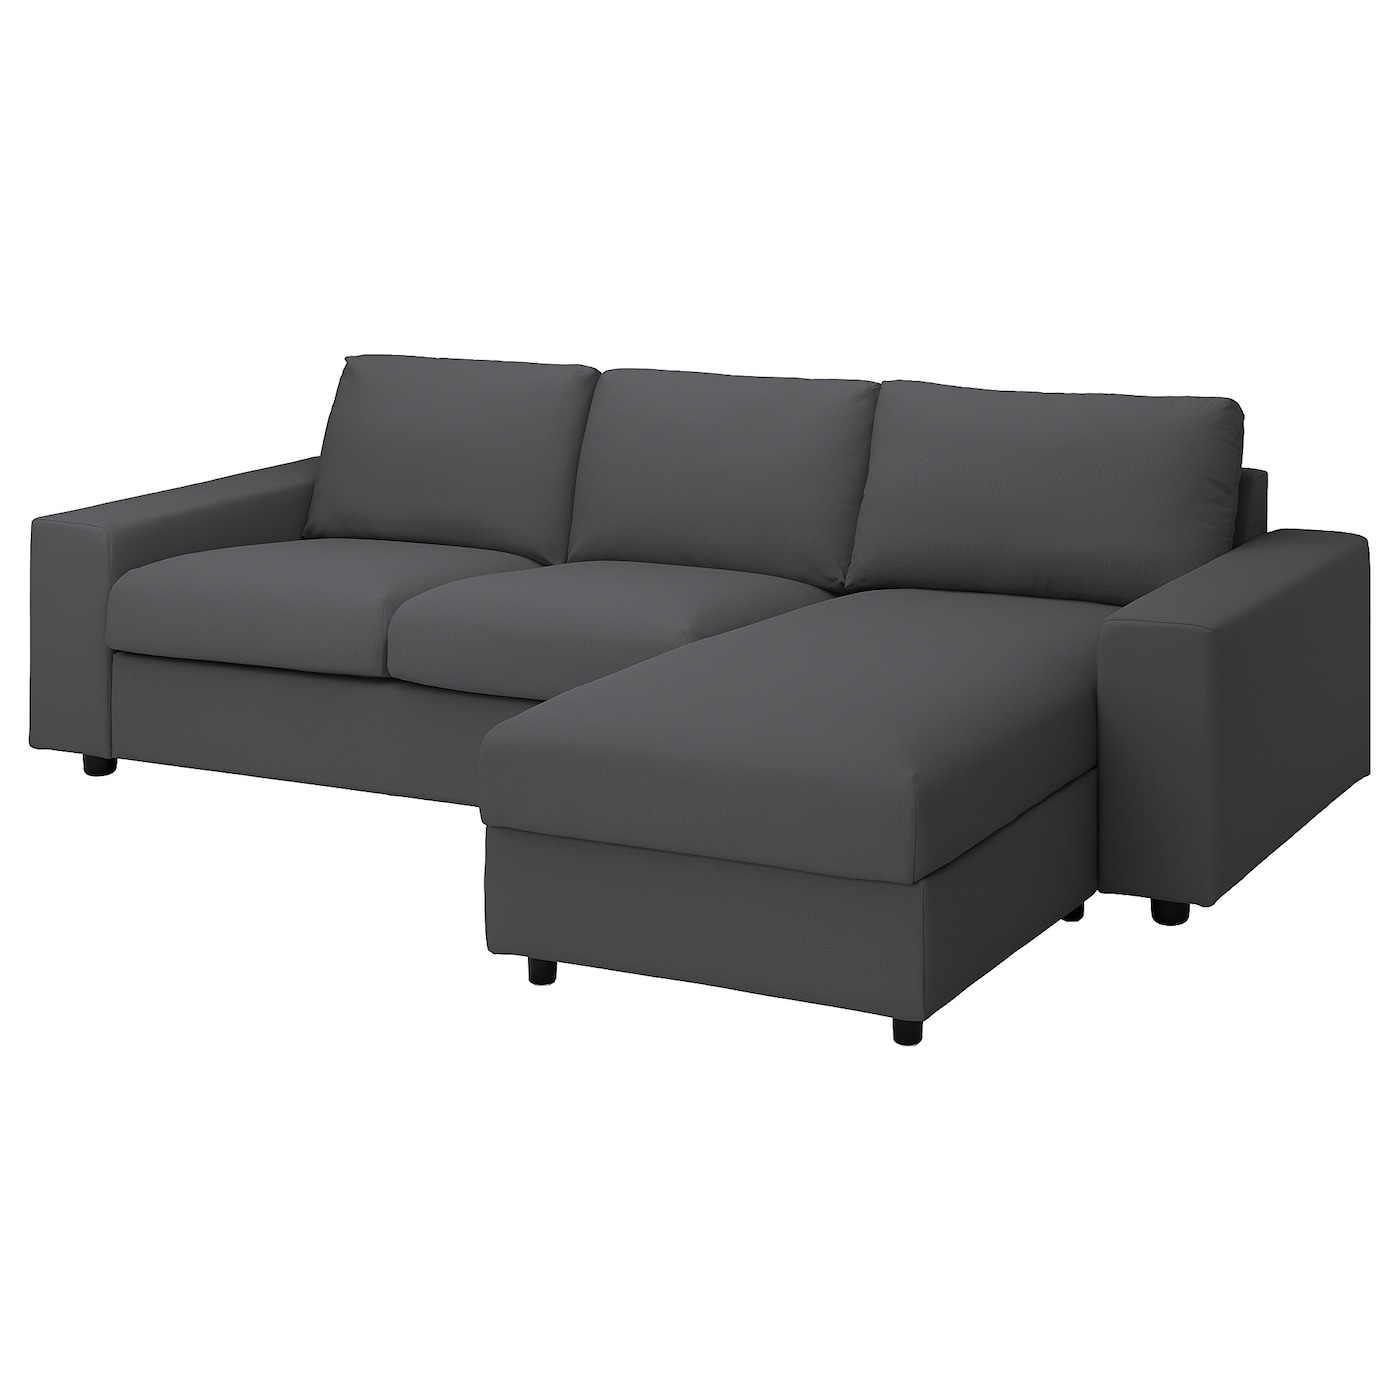 ВИМЛЕ 3-местный диван + диван, с широкими подлокотниками/Халларп серый VIMLE IKEA диван прямой смарт mille 09 3 х местный с подлокотниками еврокнижка а2491530061